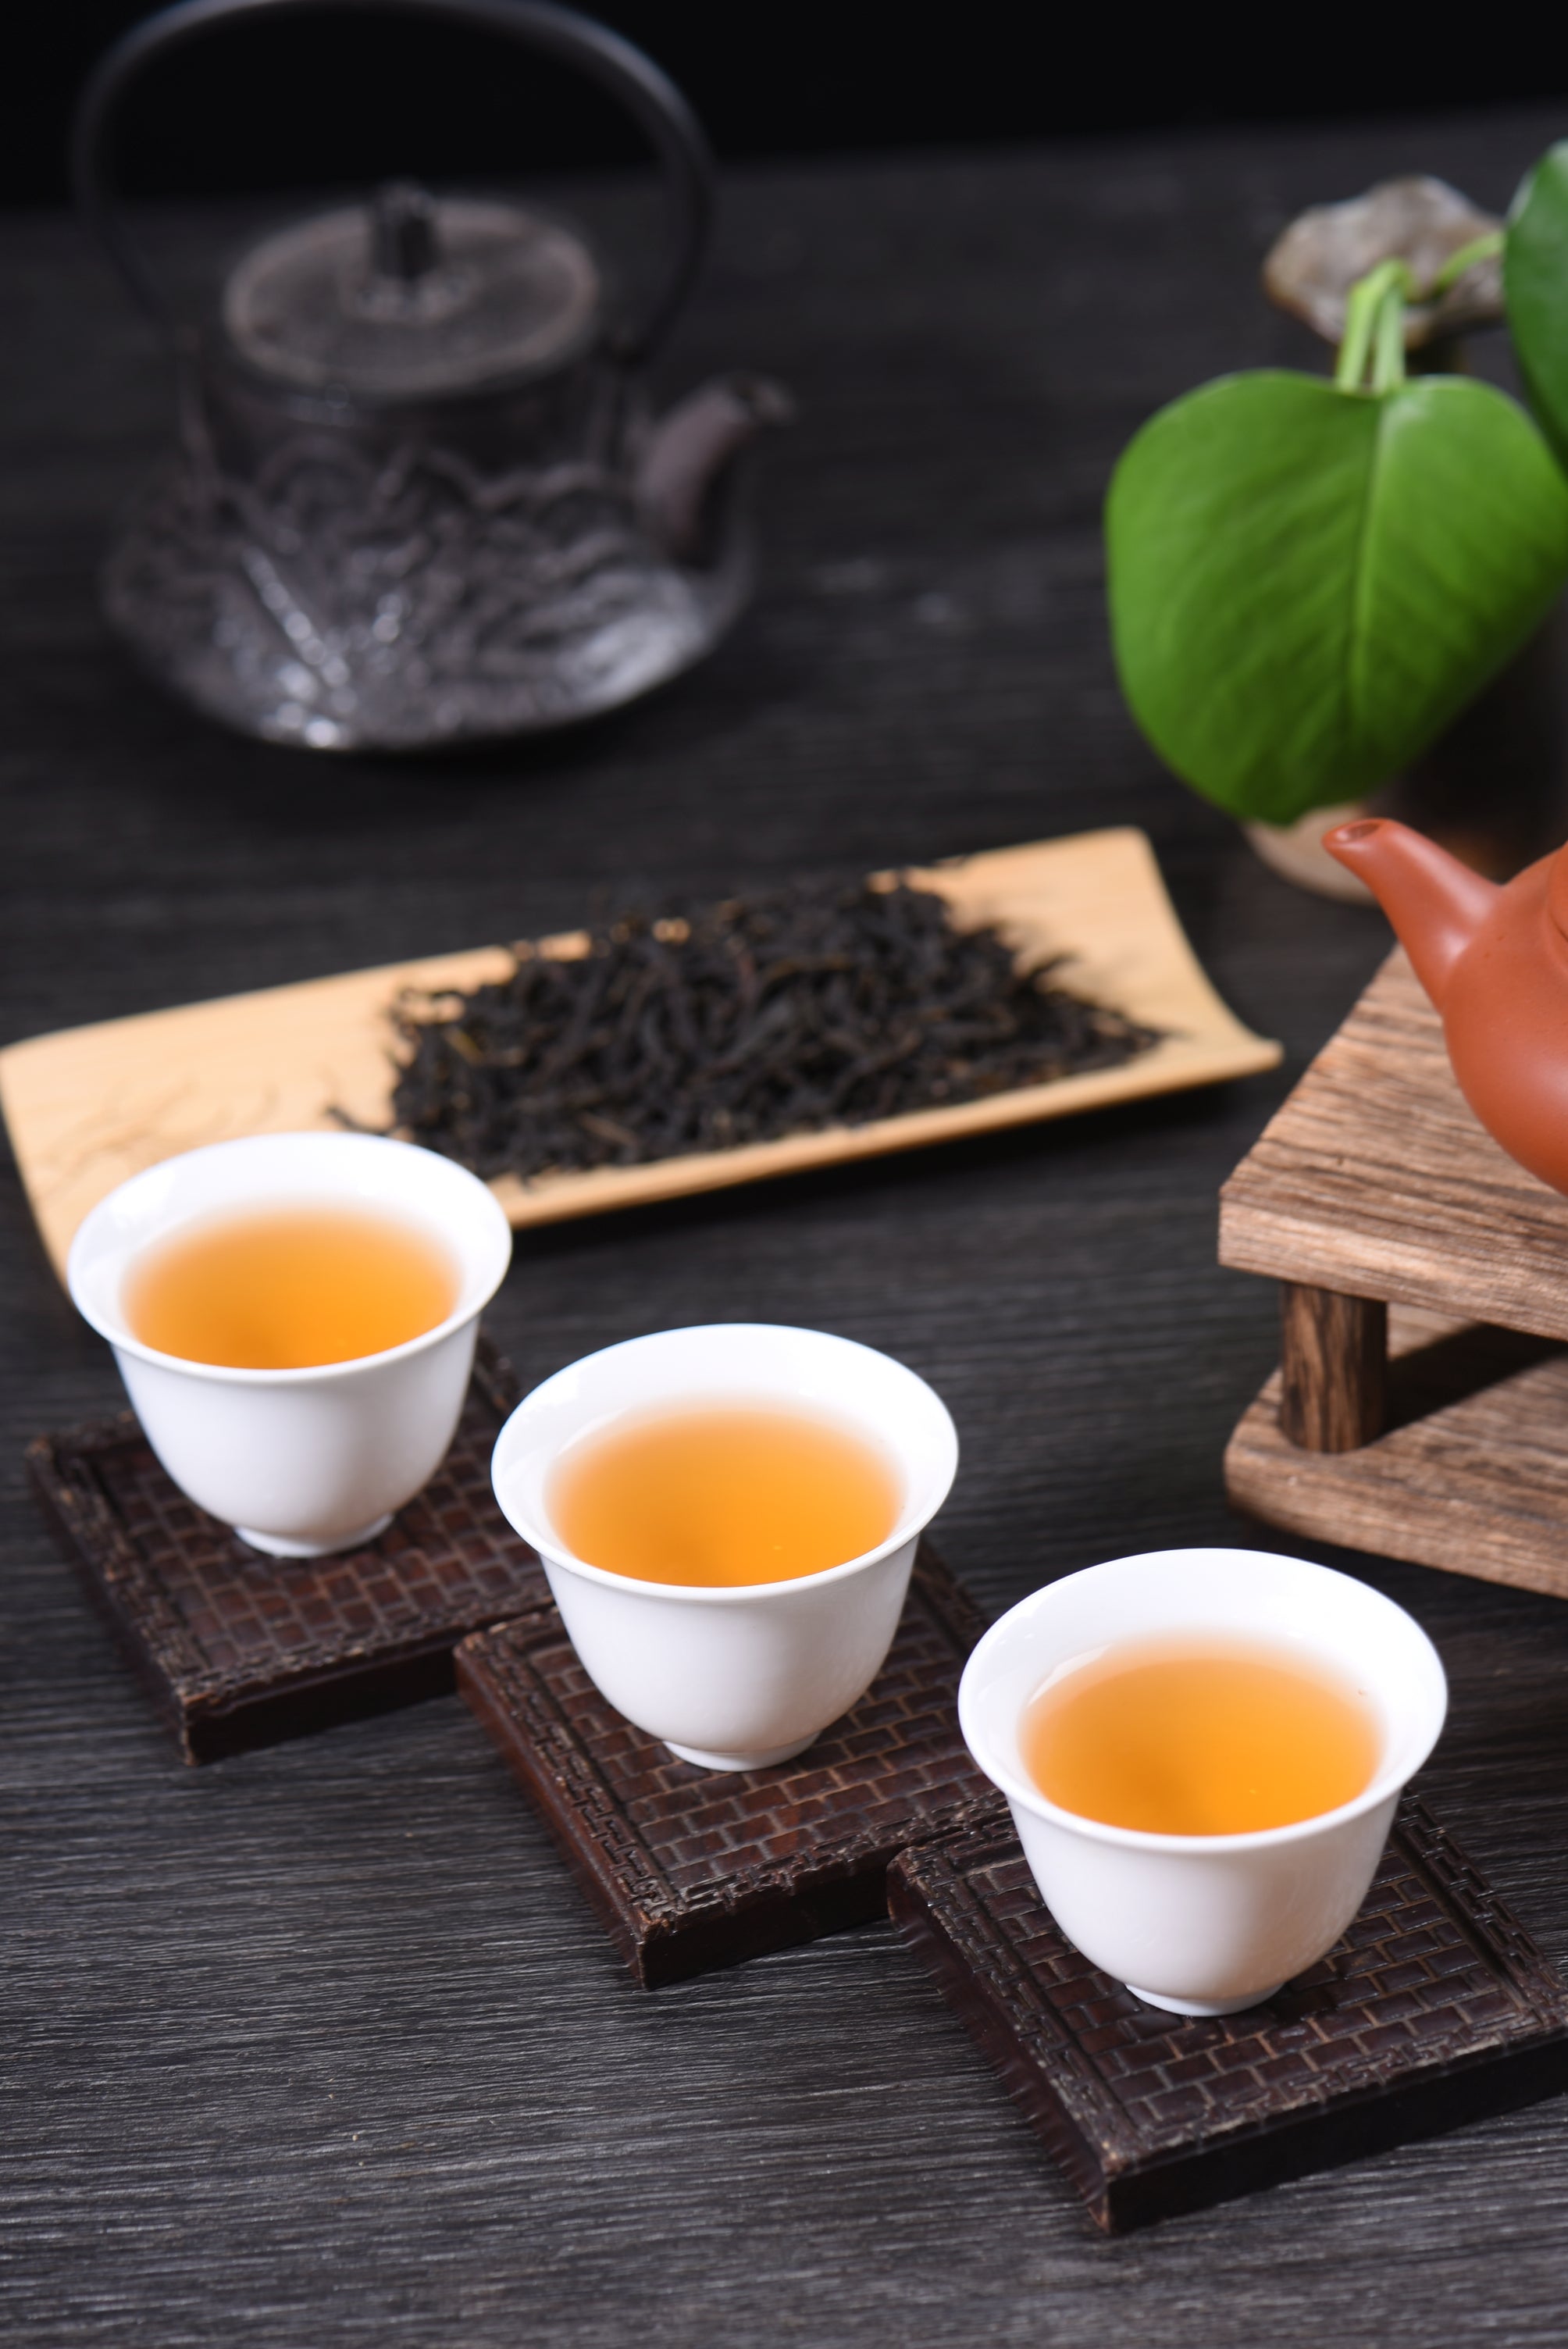 High Mountain Jiang Mu Xiang Ginger Aroma Dan Cong Oolong Tea Yunnan Sourcing Tea Shop